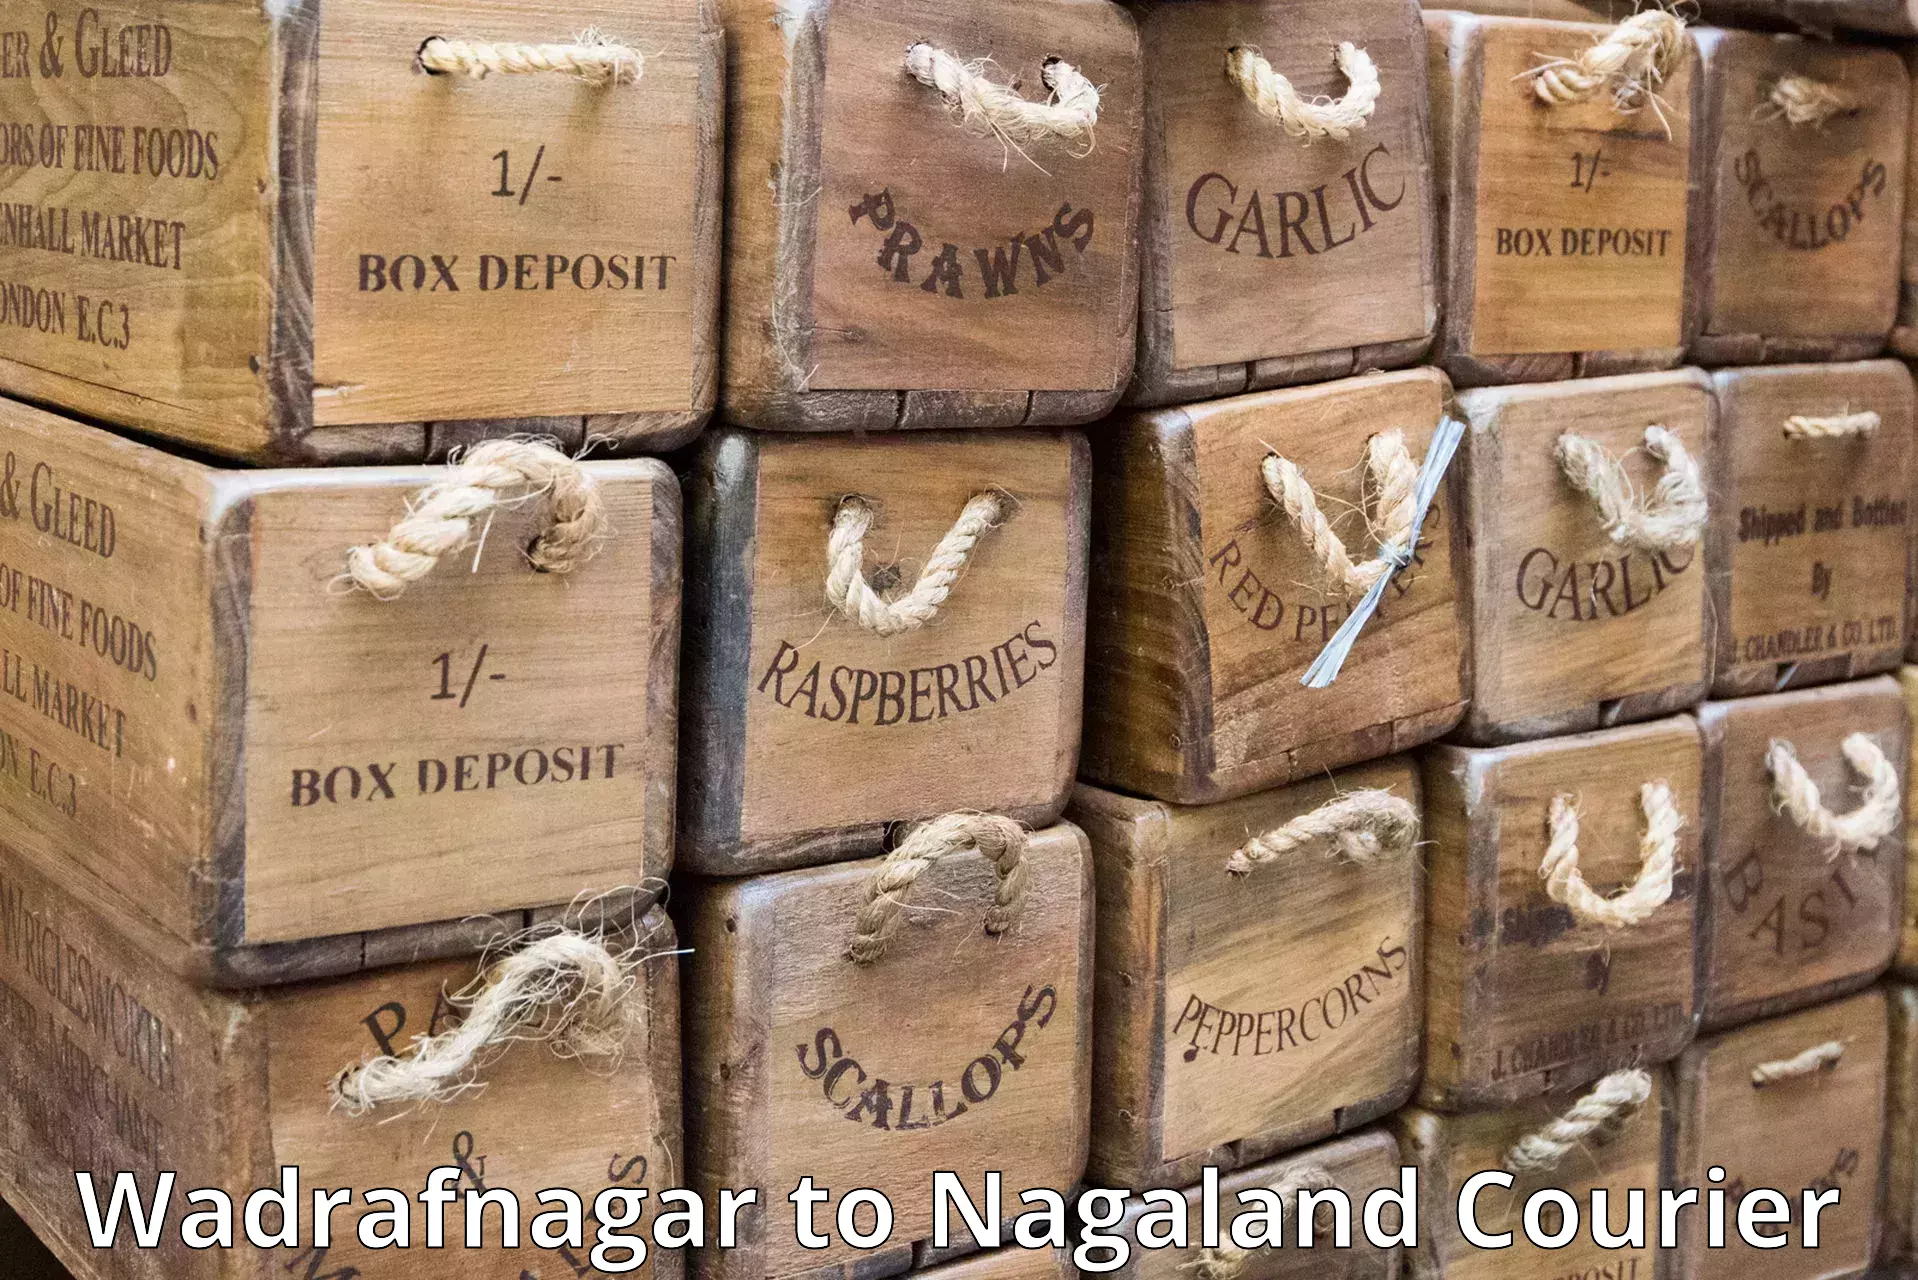 Customer-centric shipping Wadrafnagar to Nagaland